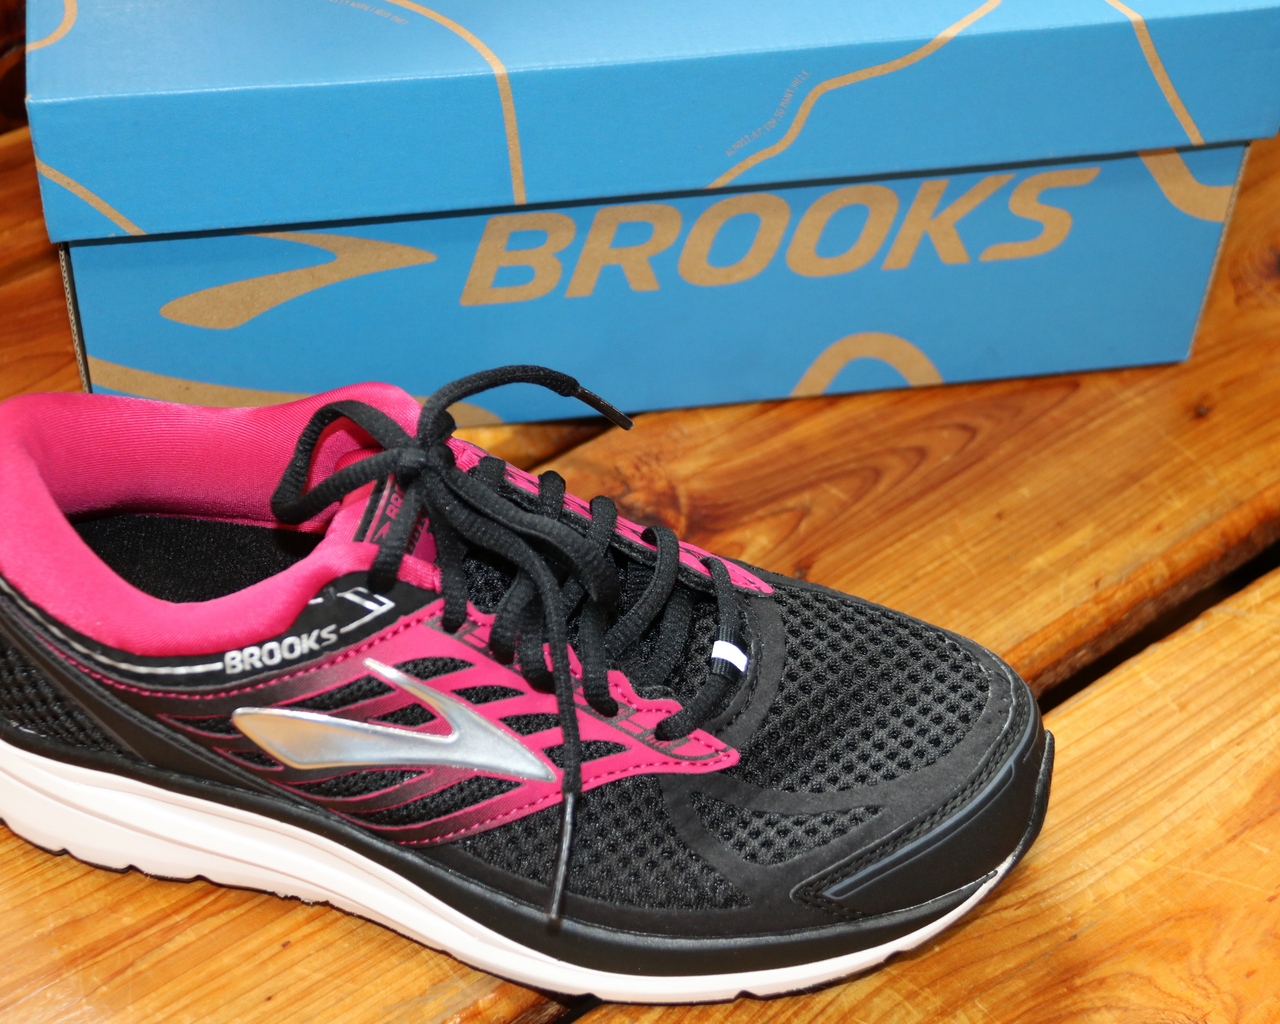 Brooks Footwear for Men & Women